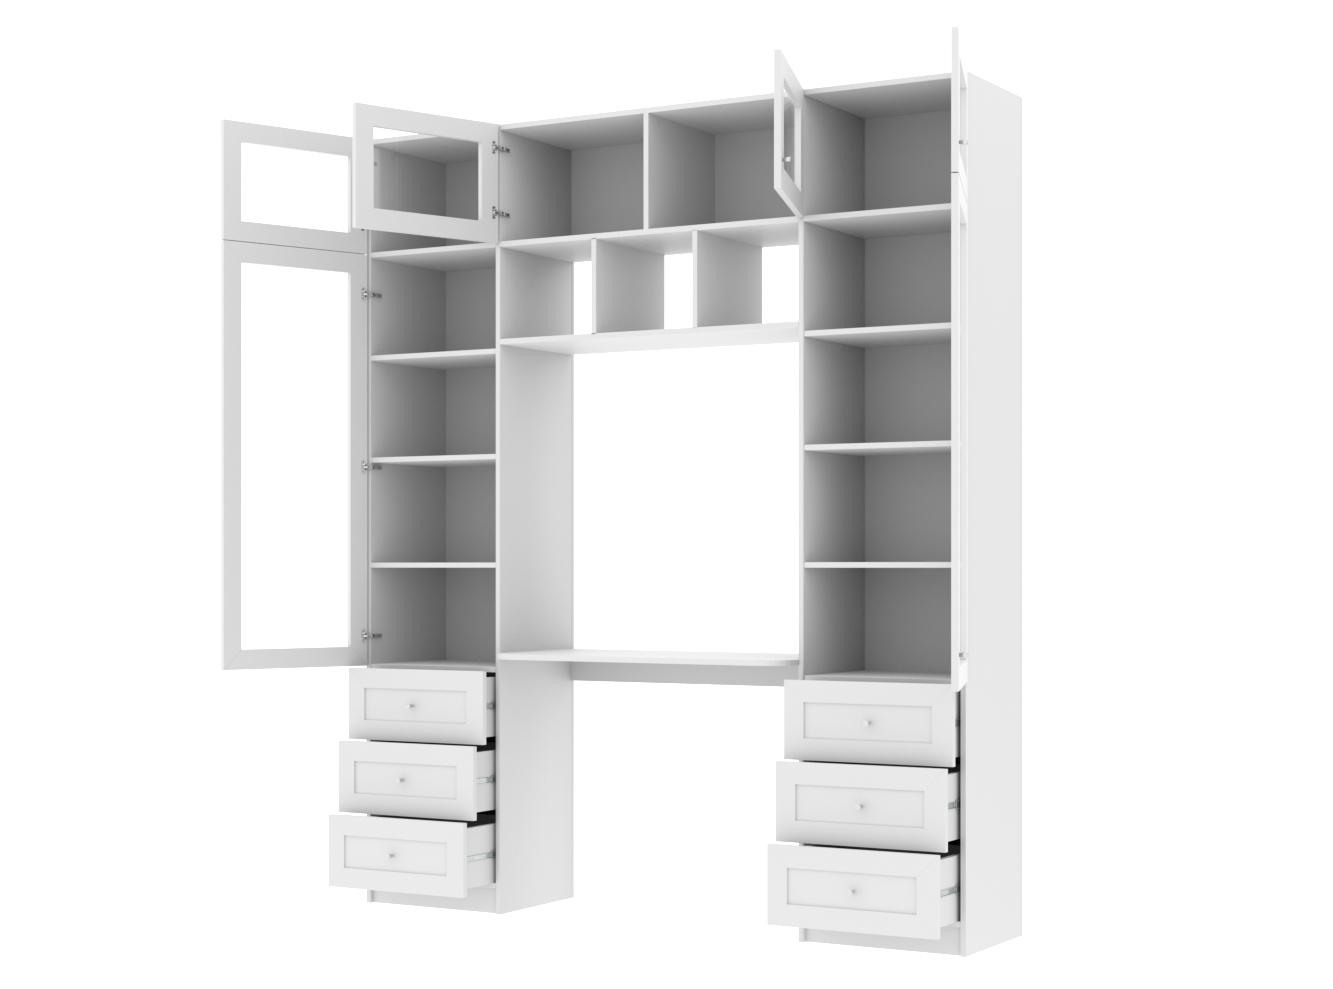  Книжный шкаф Билли 365 white ИКЕА (IKEA) с рабочим местом изображение товара